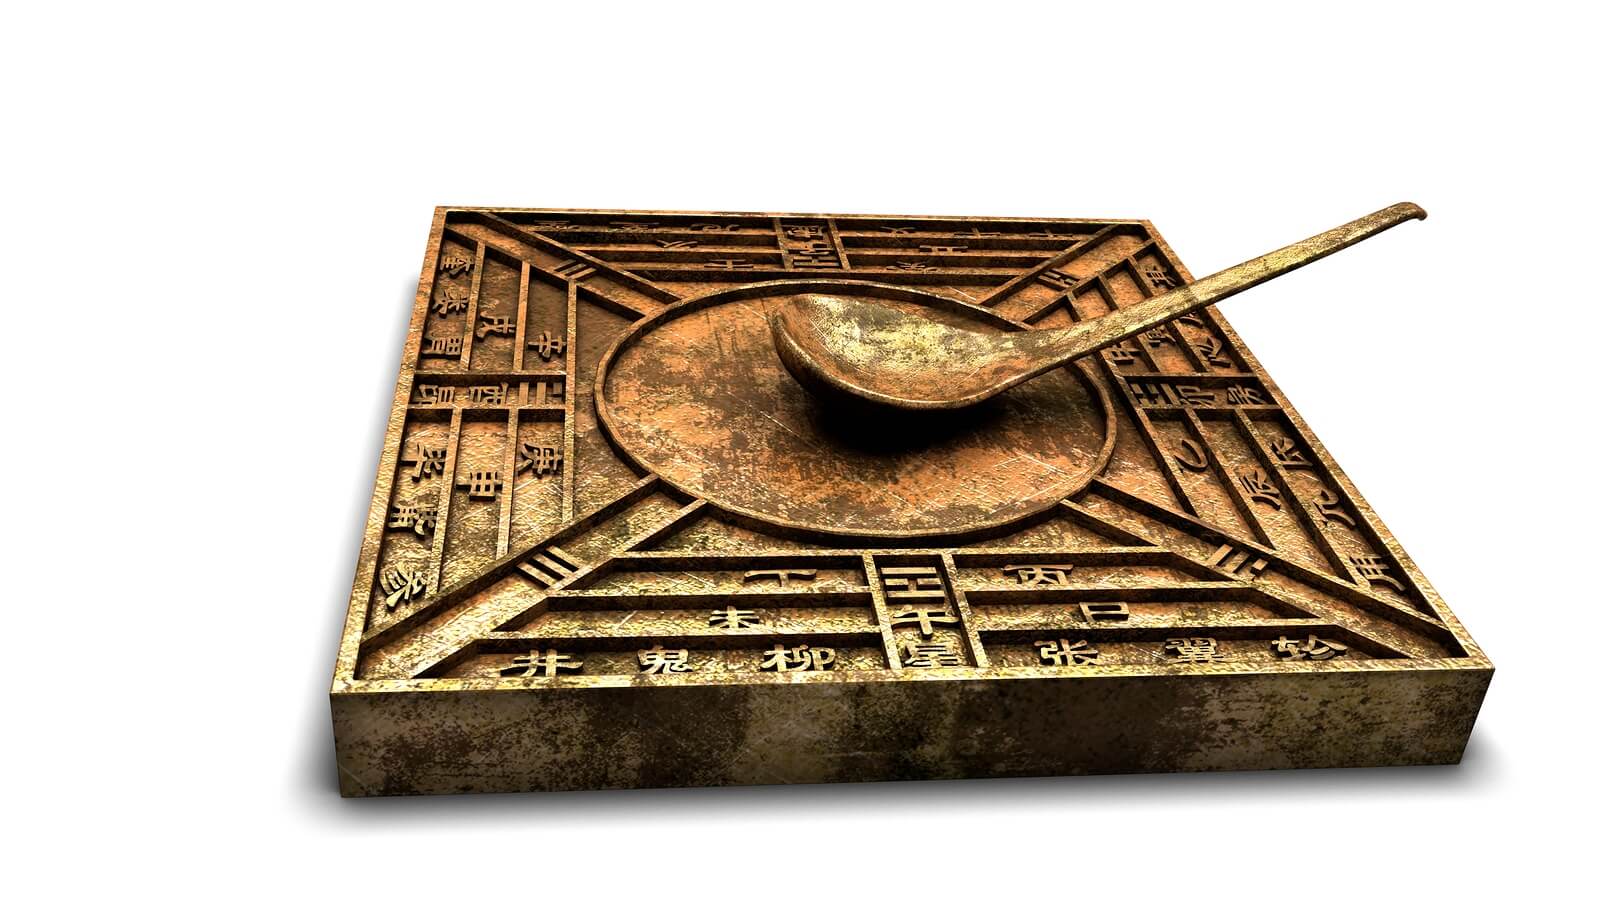 Forntida kinesiska uppfinningar